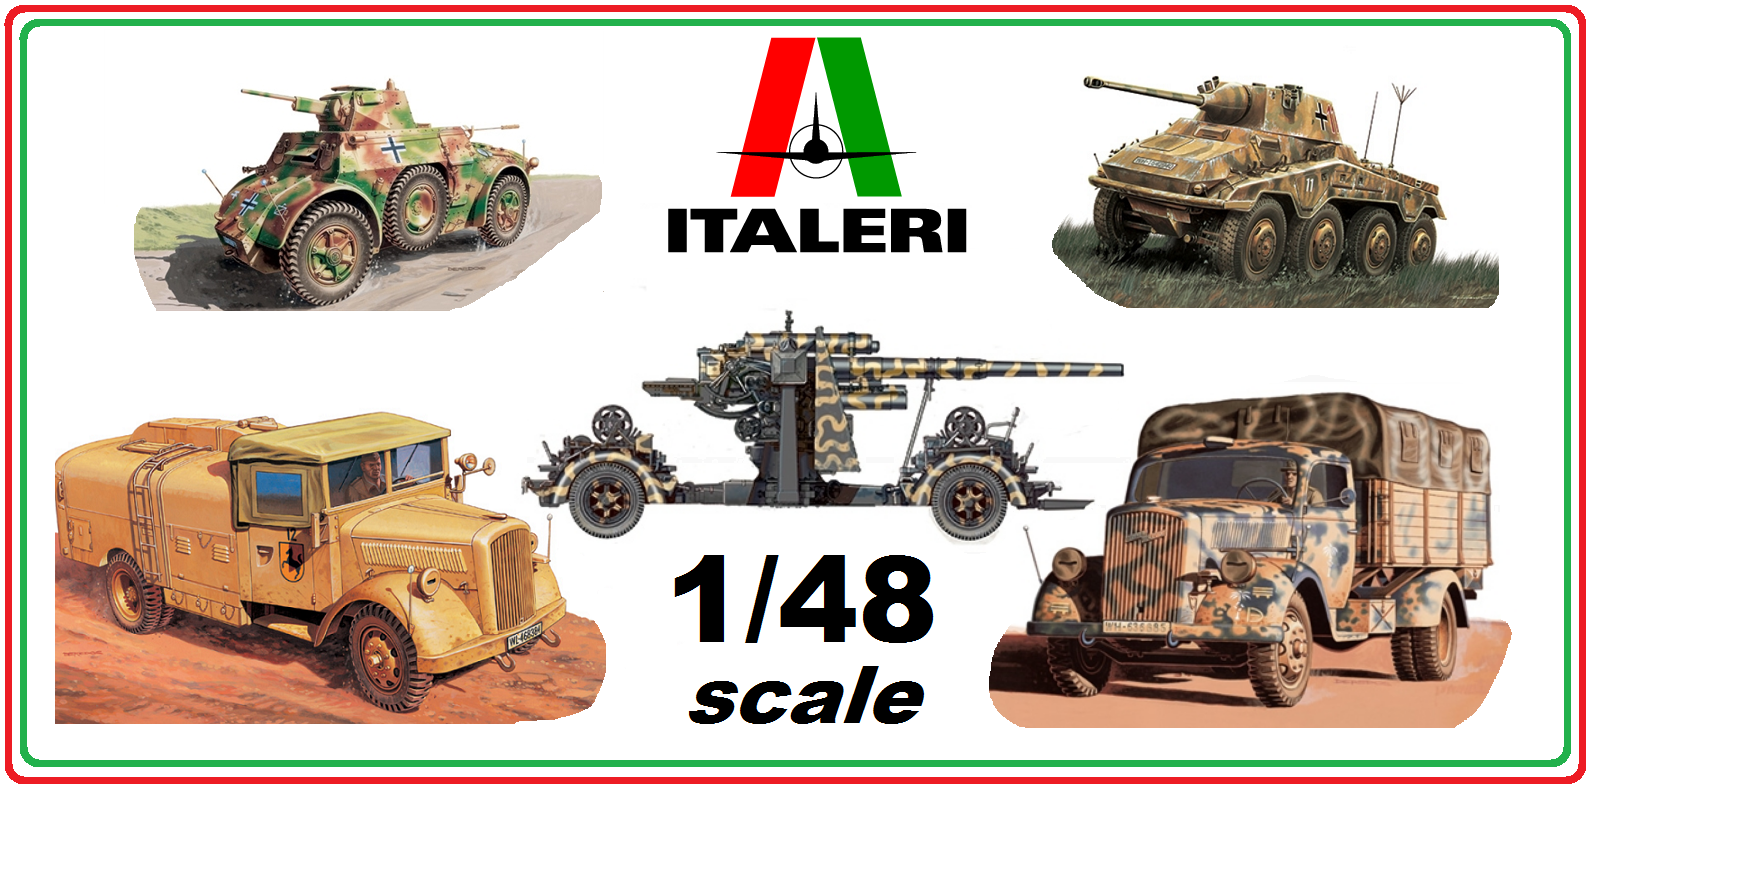 48 scale Italeri